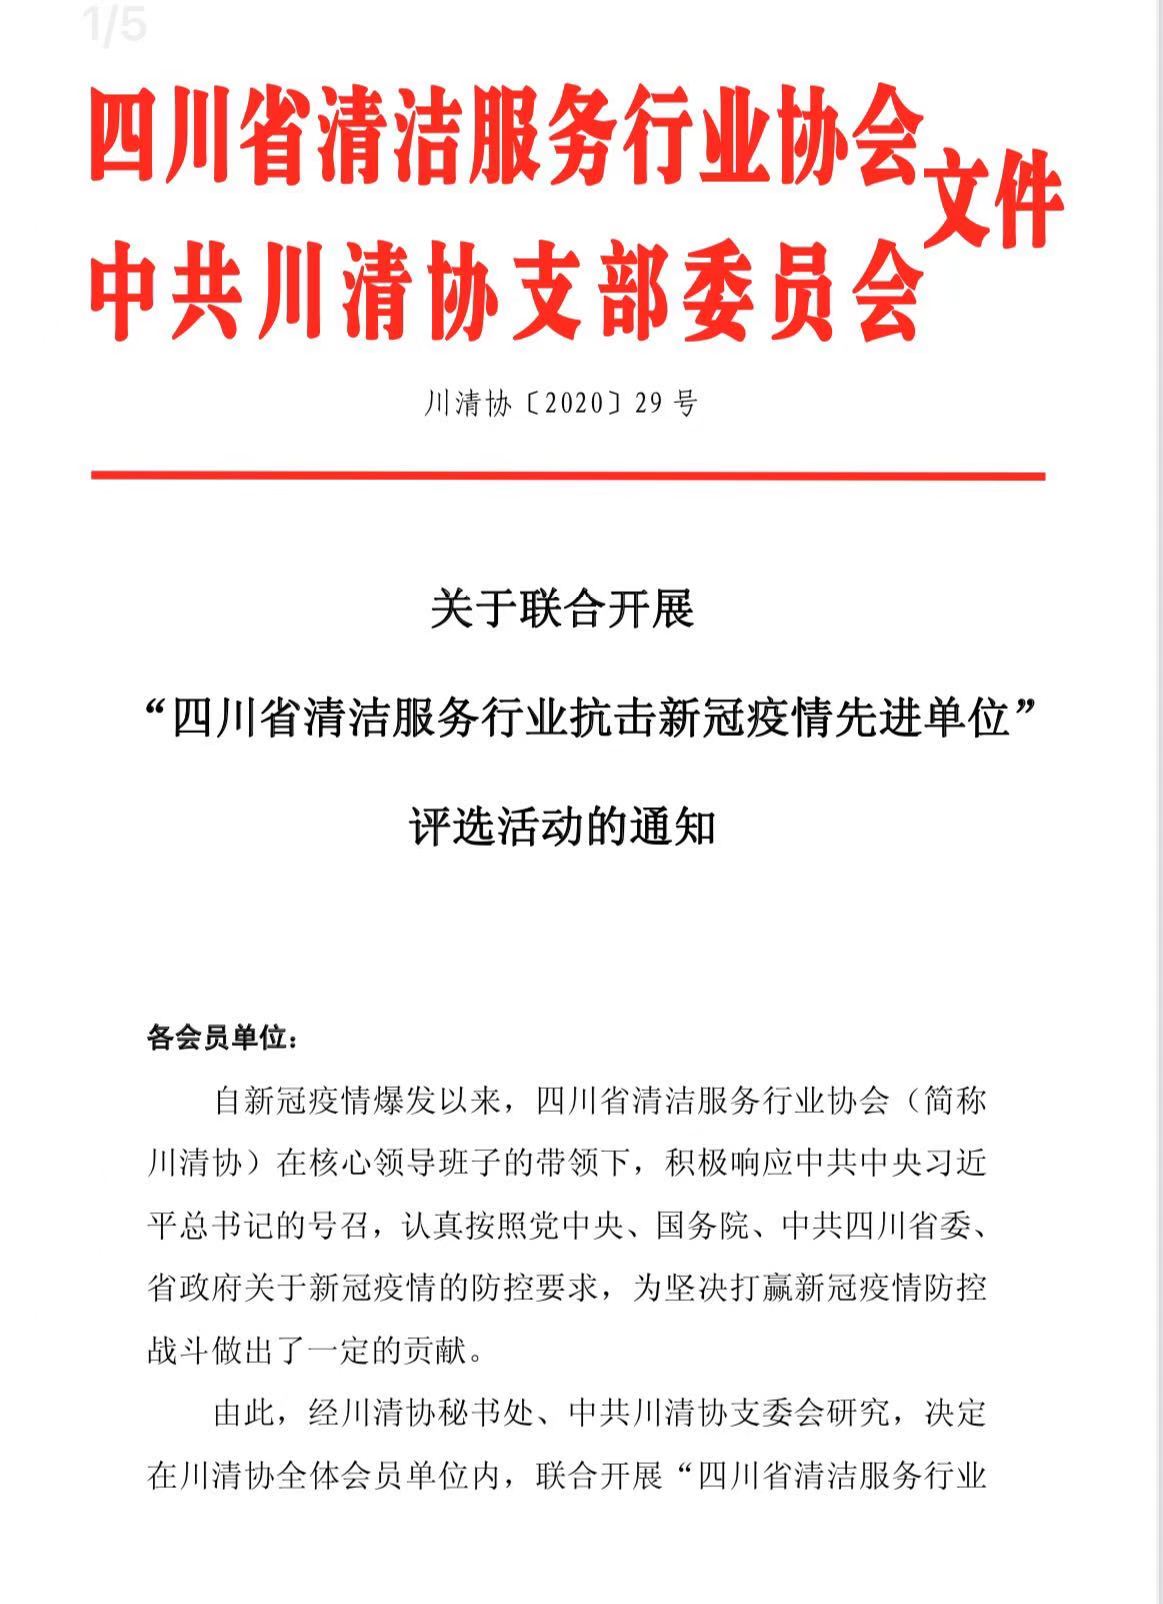 “四川省清洁服务行业抗击新冠疫情先进单位”评选活动的通知